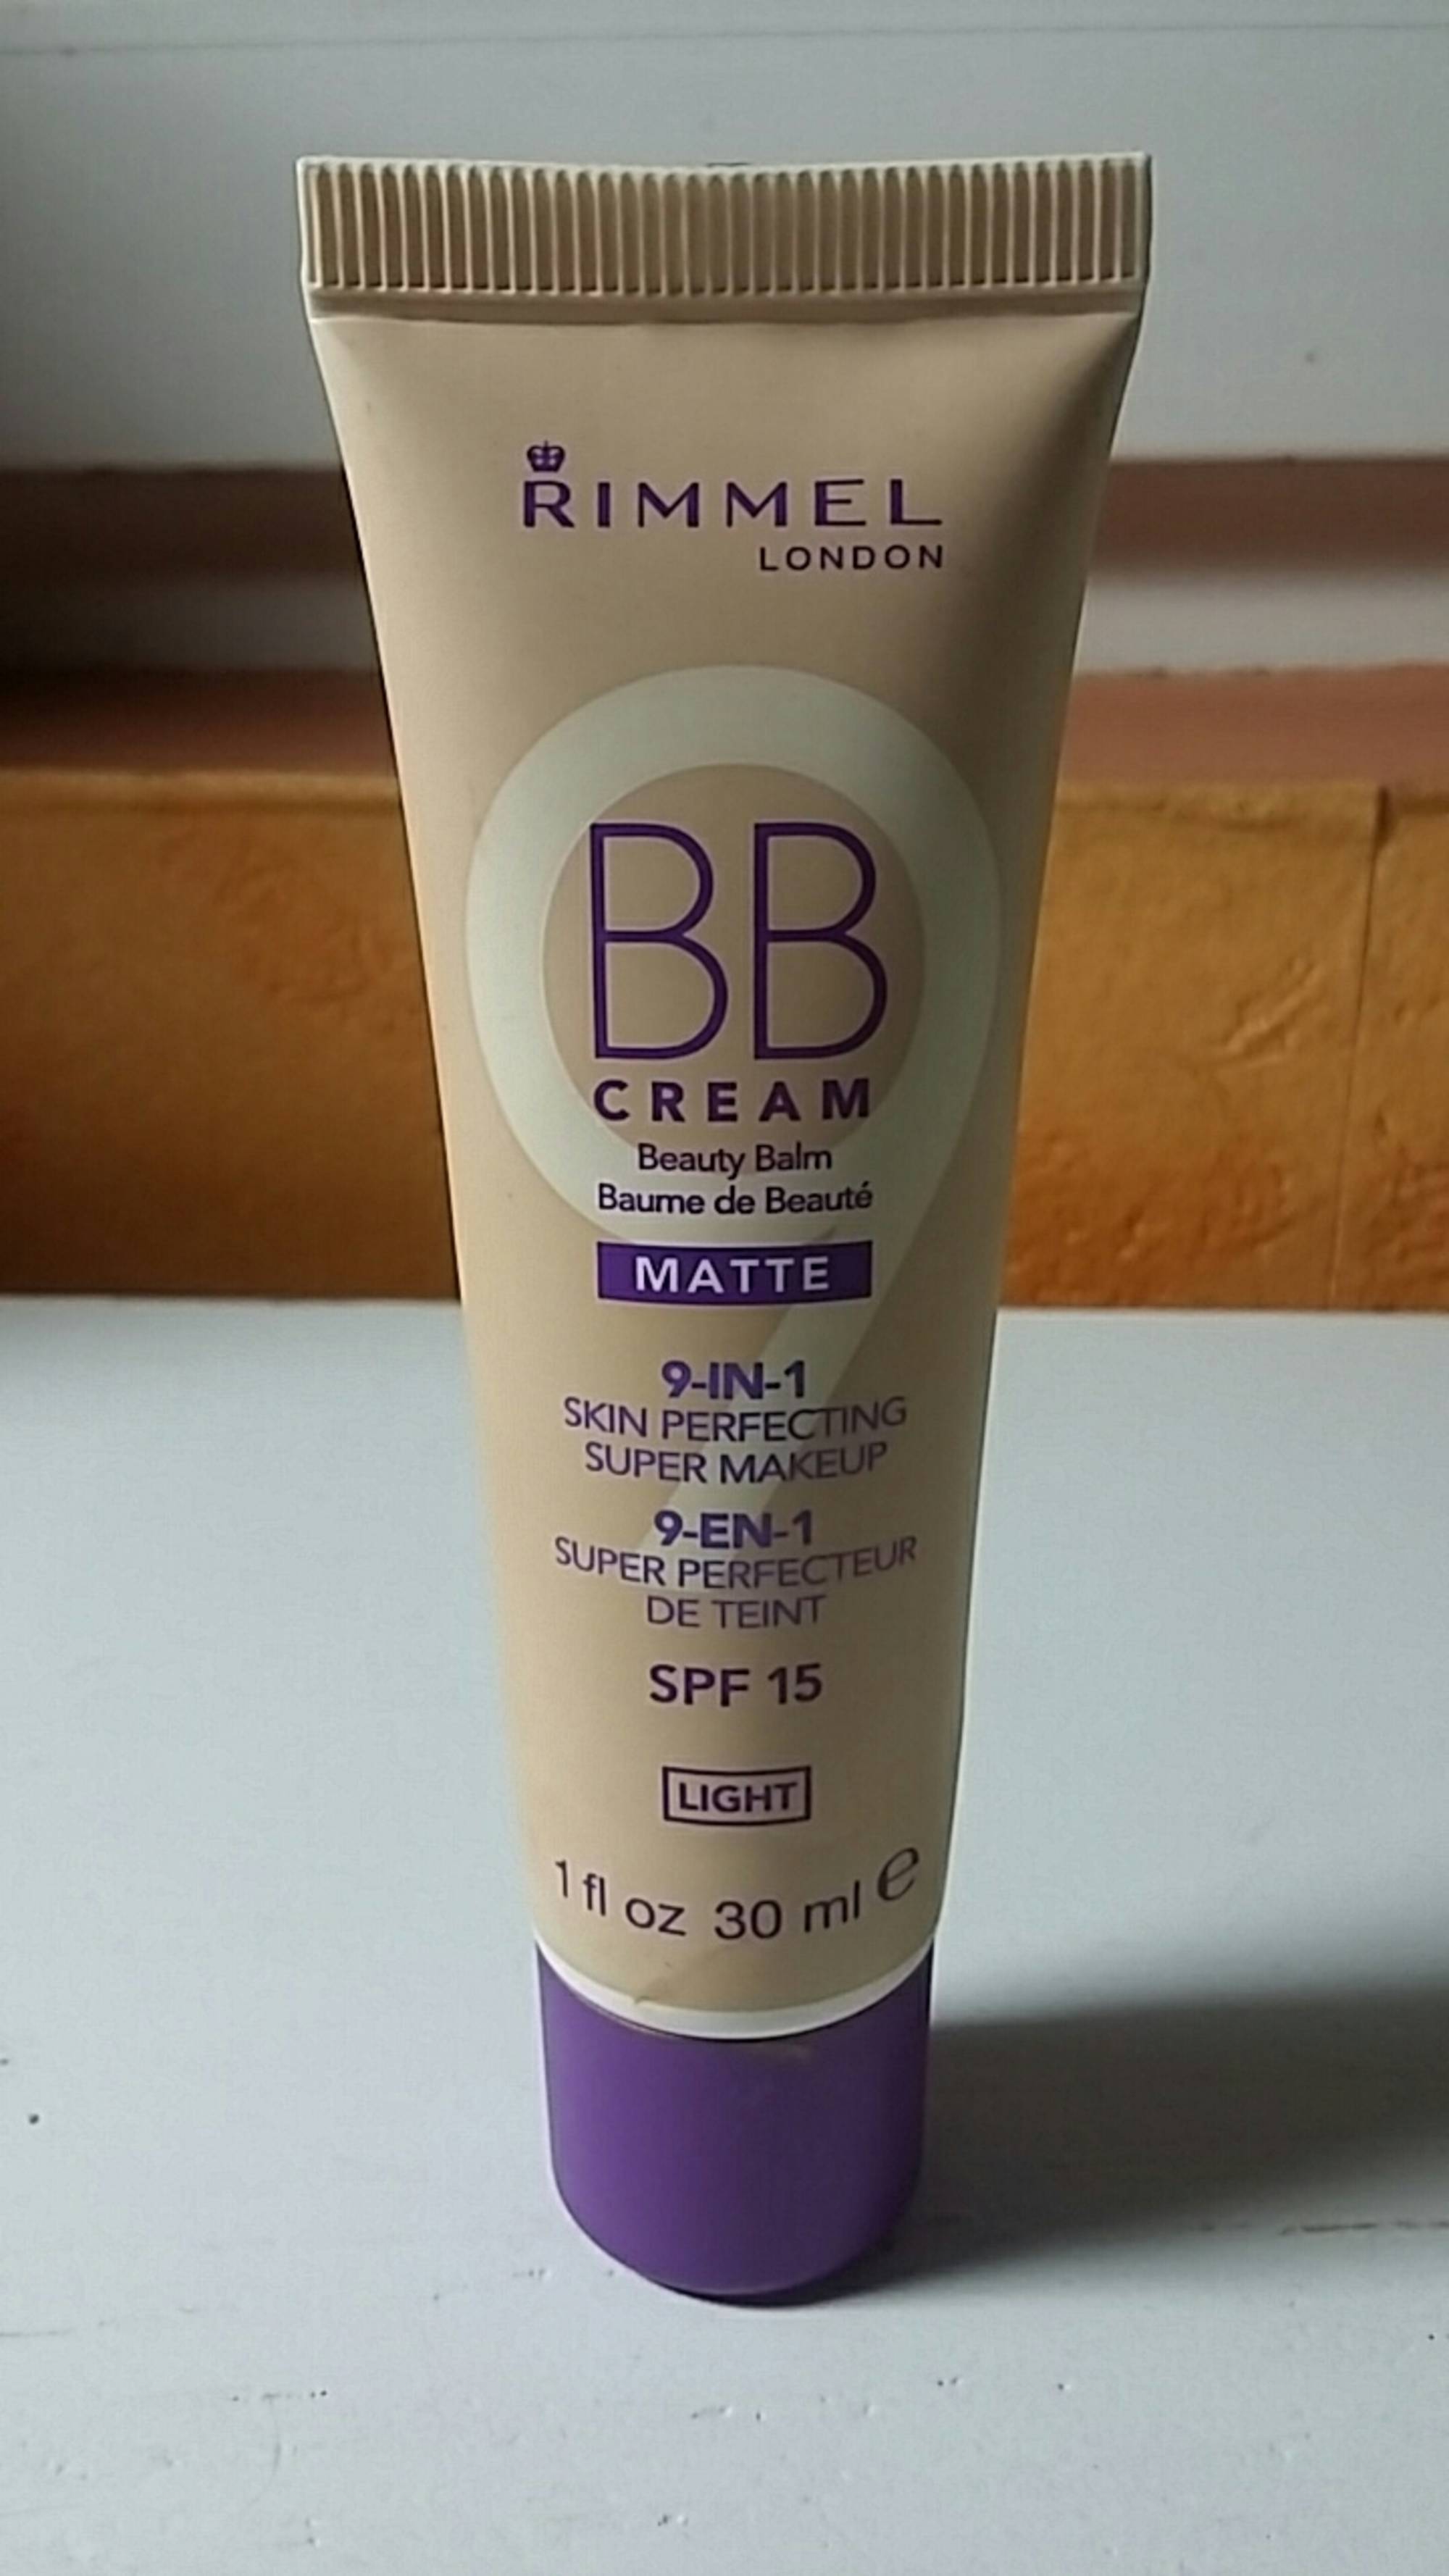 RIMMEL - BB cream Matte - Super perfecteur de teint SPF 15 light